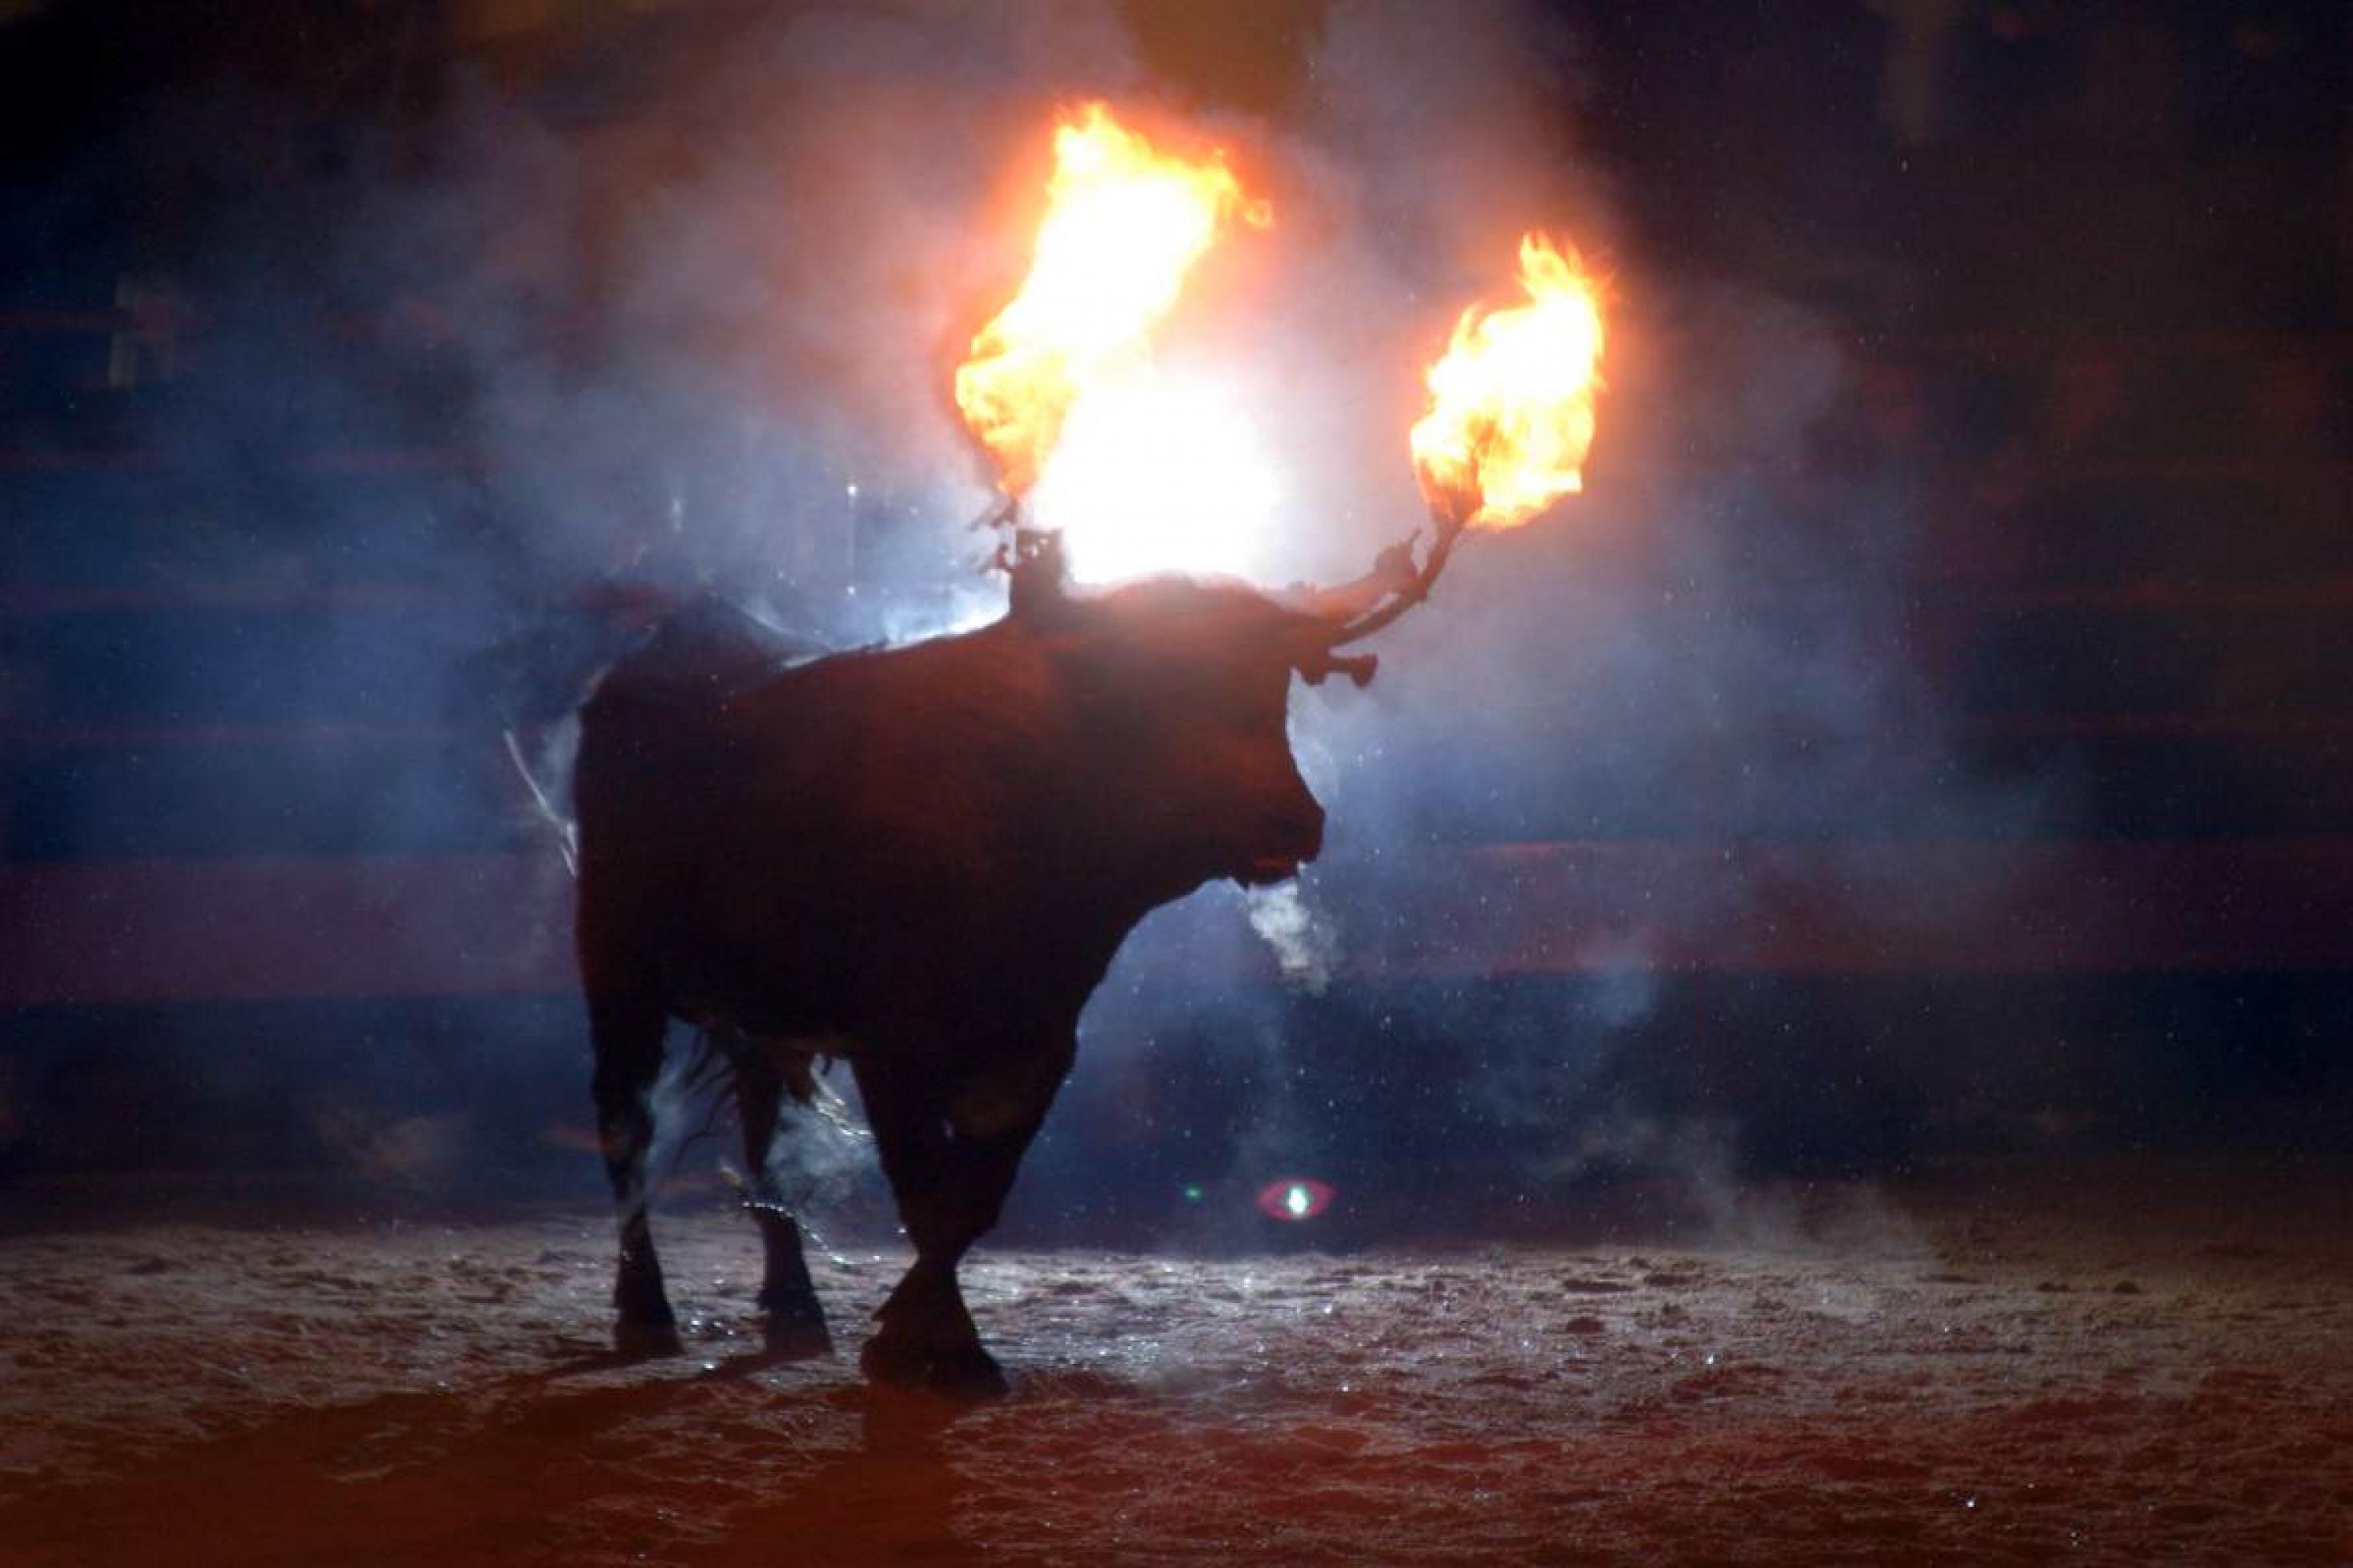 Stier mit Feuer auf den Hoernern in der Arena bei Nacht. Fiesta del Toro jubilo in Maedinaceli, Kastilien und León, Spanien